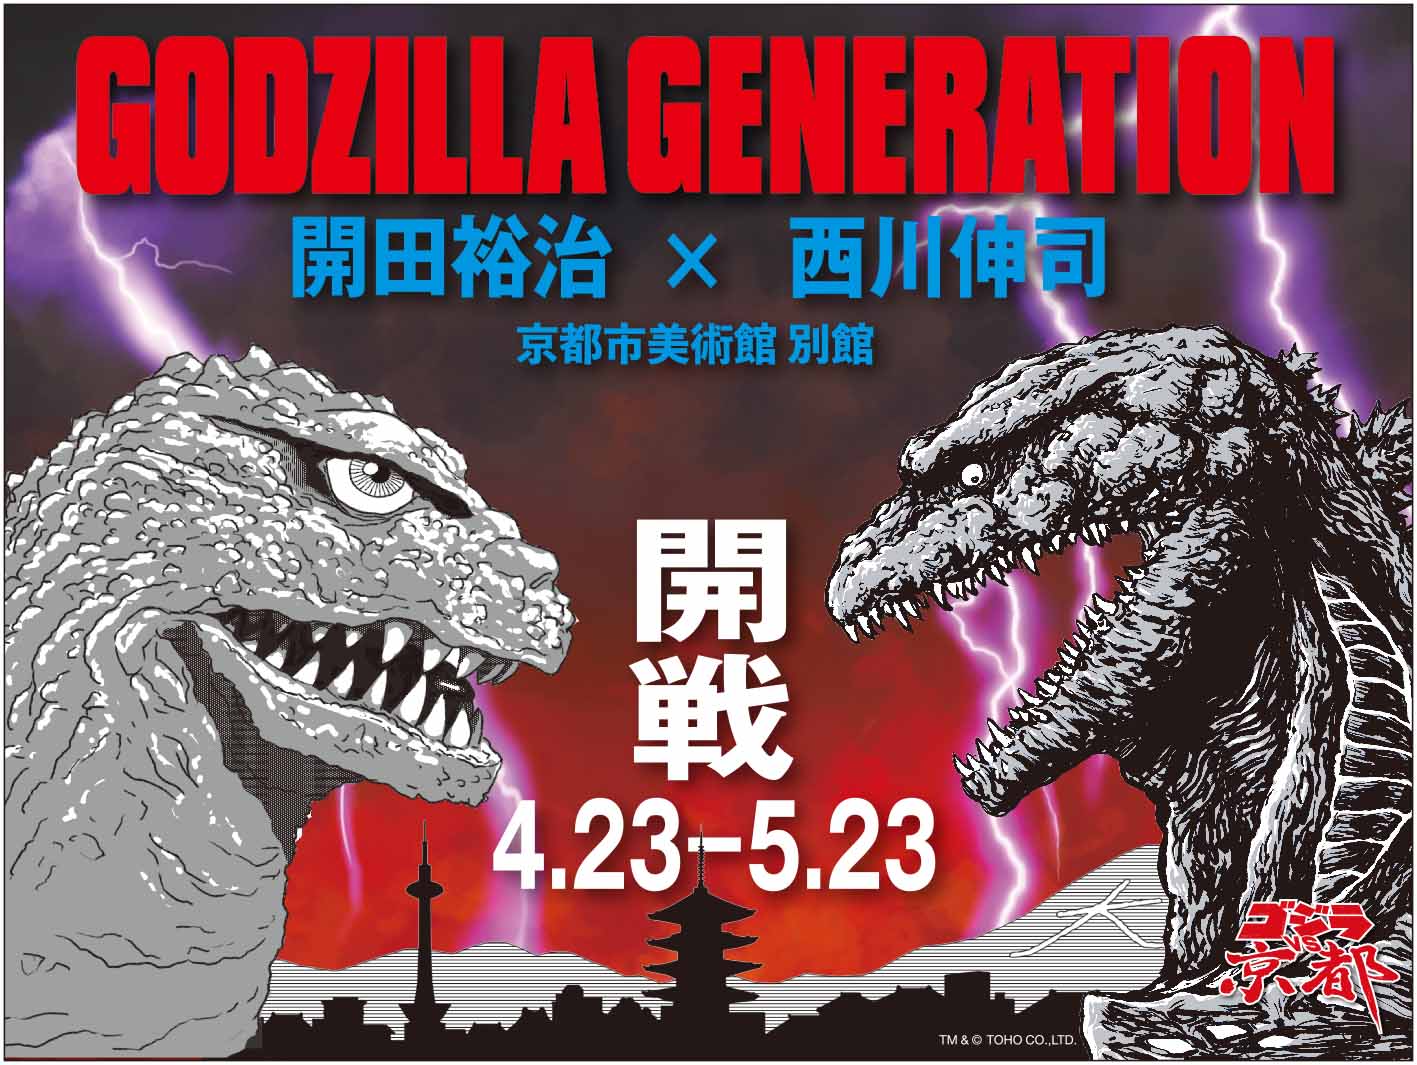 Godzilla Generation 開田裕治 西川伸司 原画展 臨時休止 京都市京セラ美術館 公式ウェブサイト